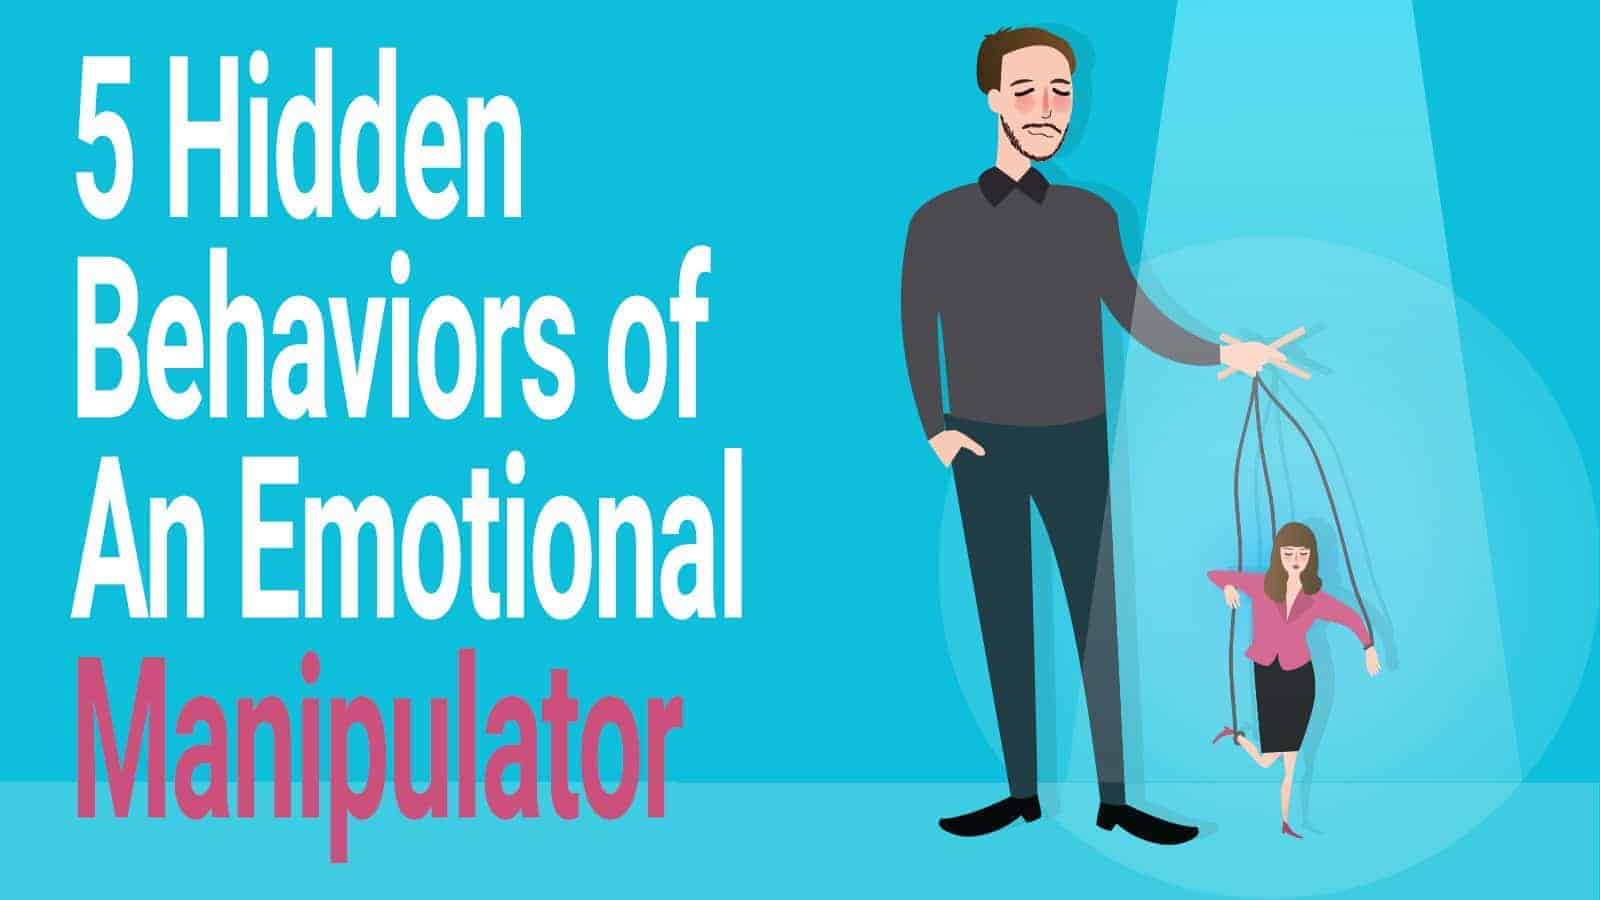 5 Hidden Behaviors of An Emotional Manipulator